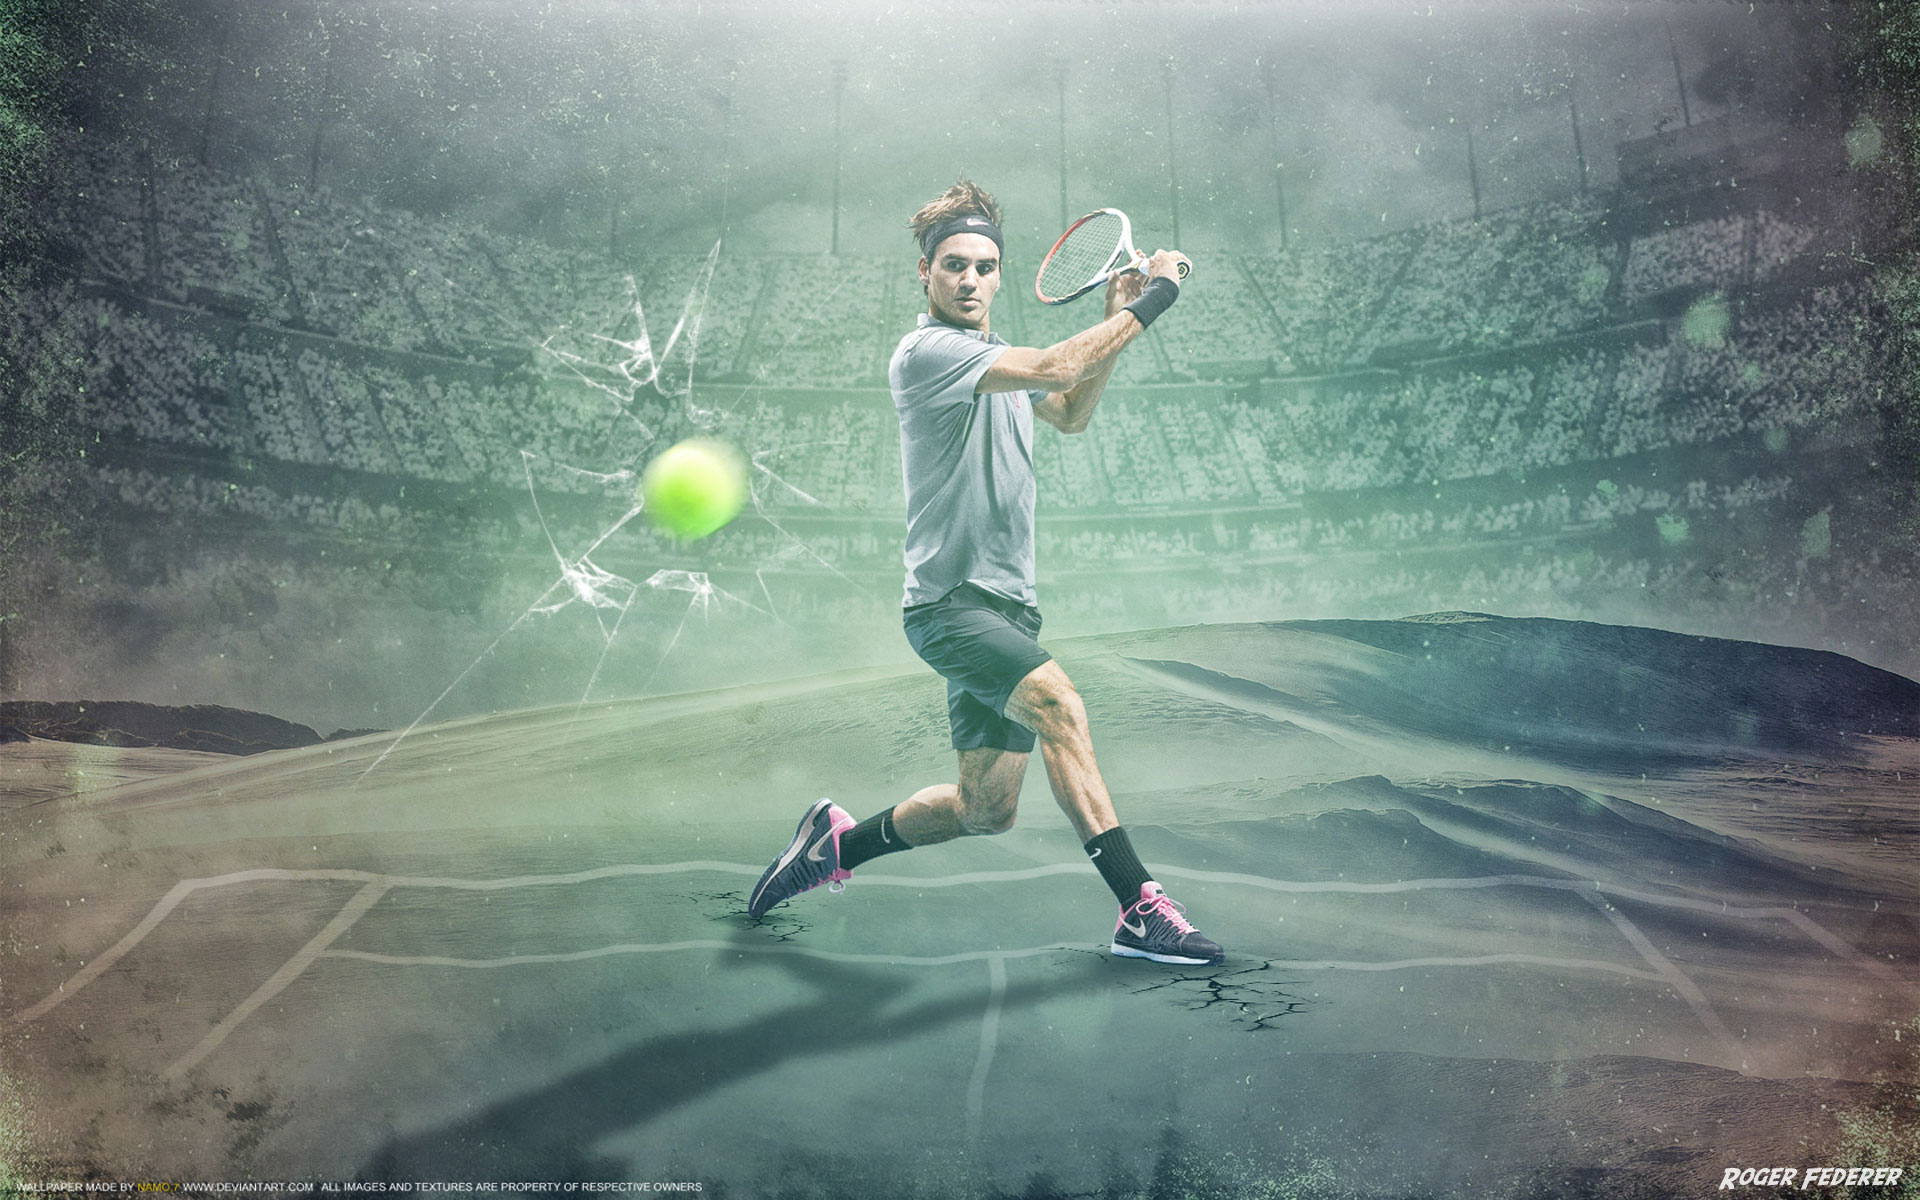 Télécharger des fonds d'écran Roger Federer HD